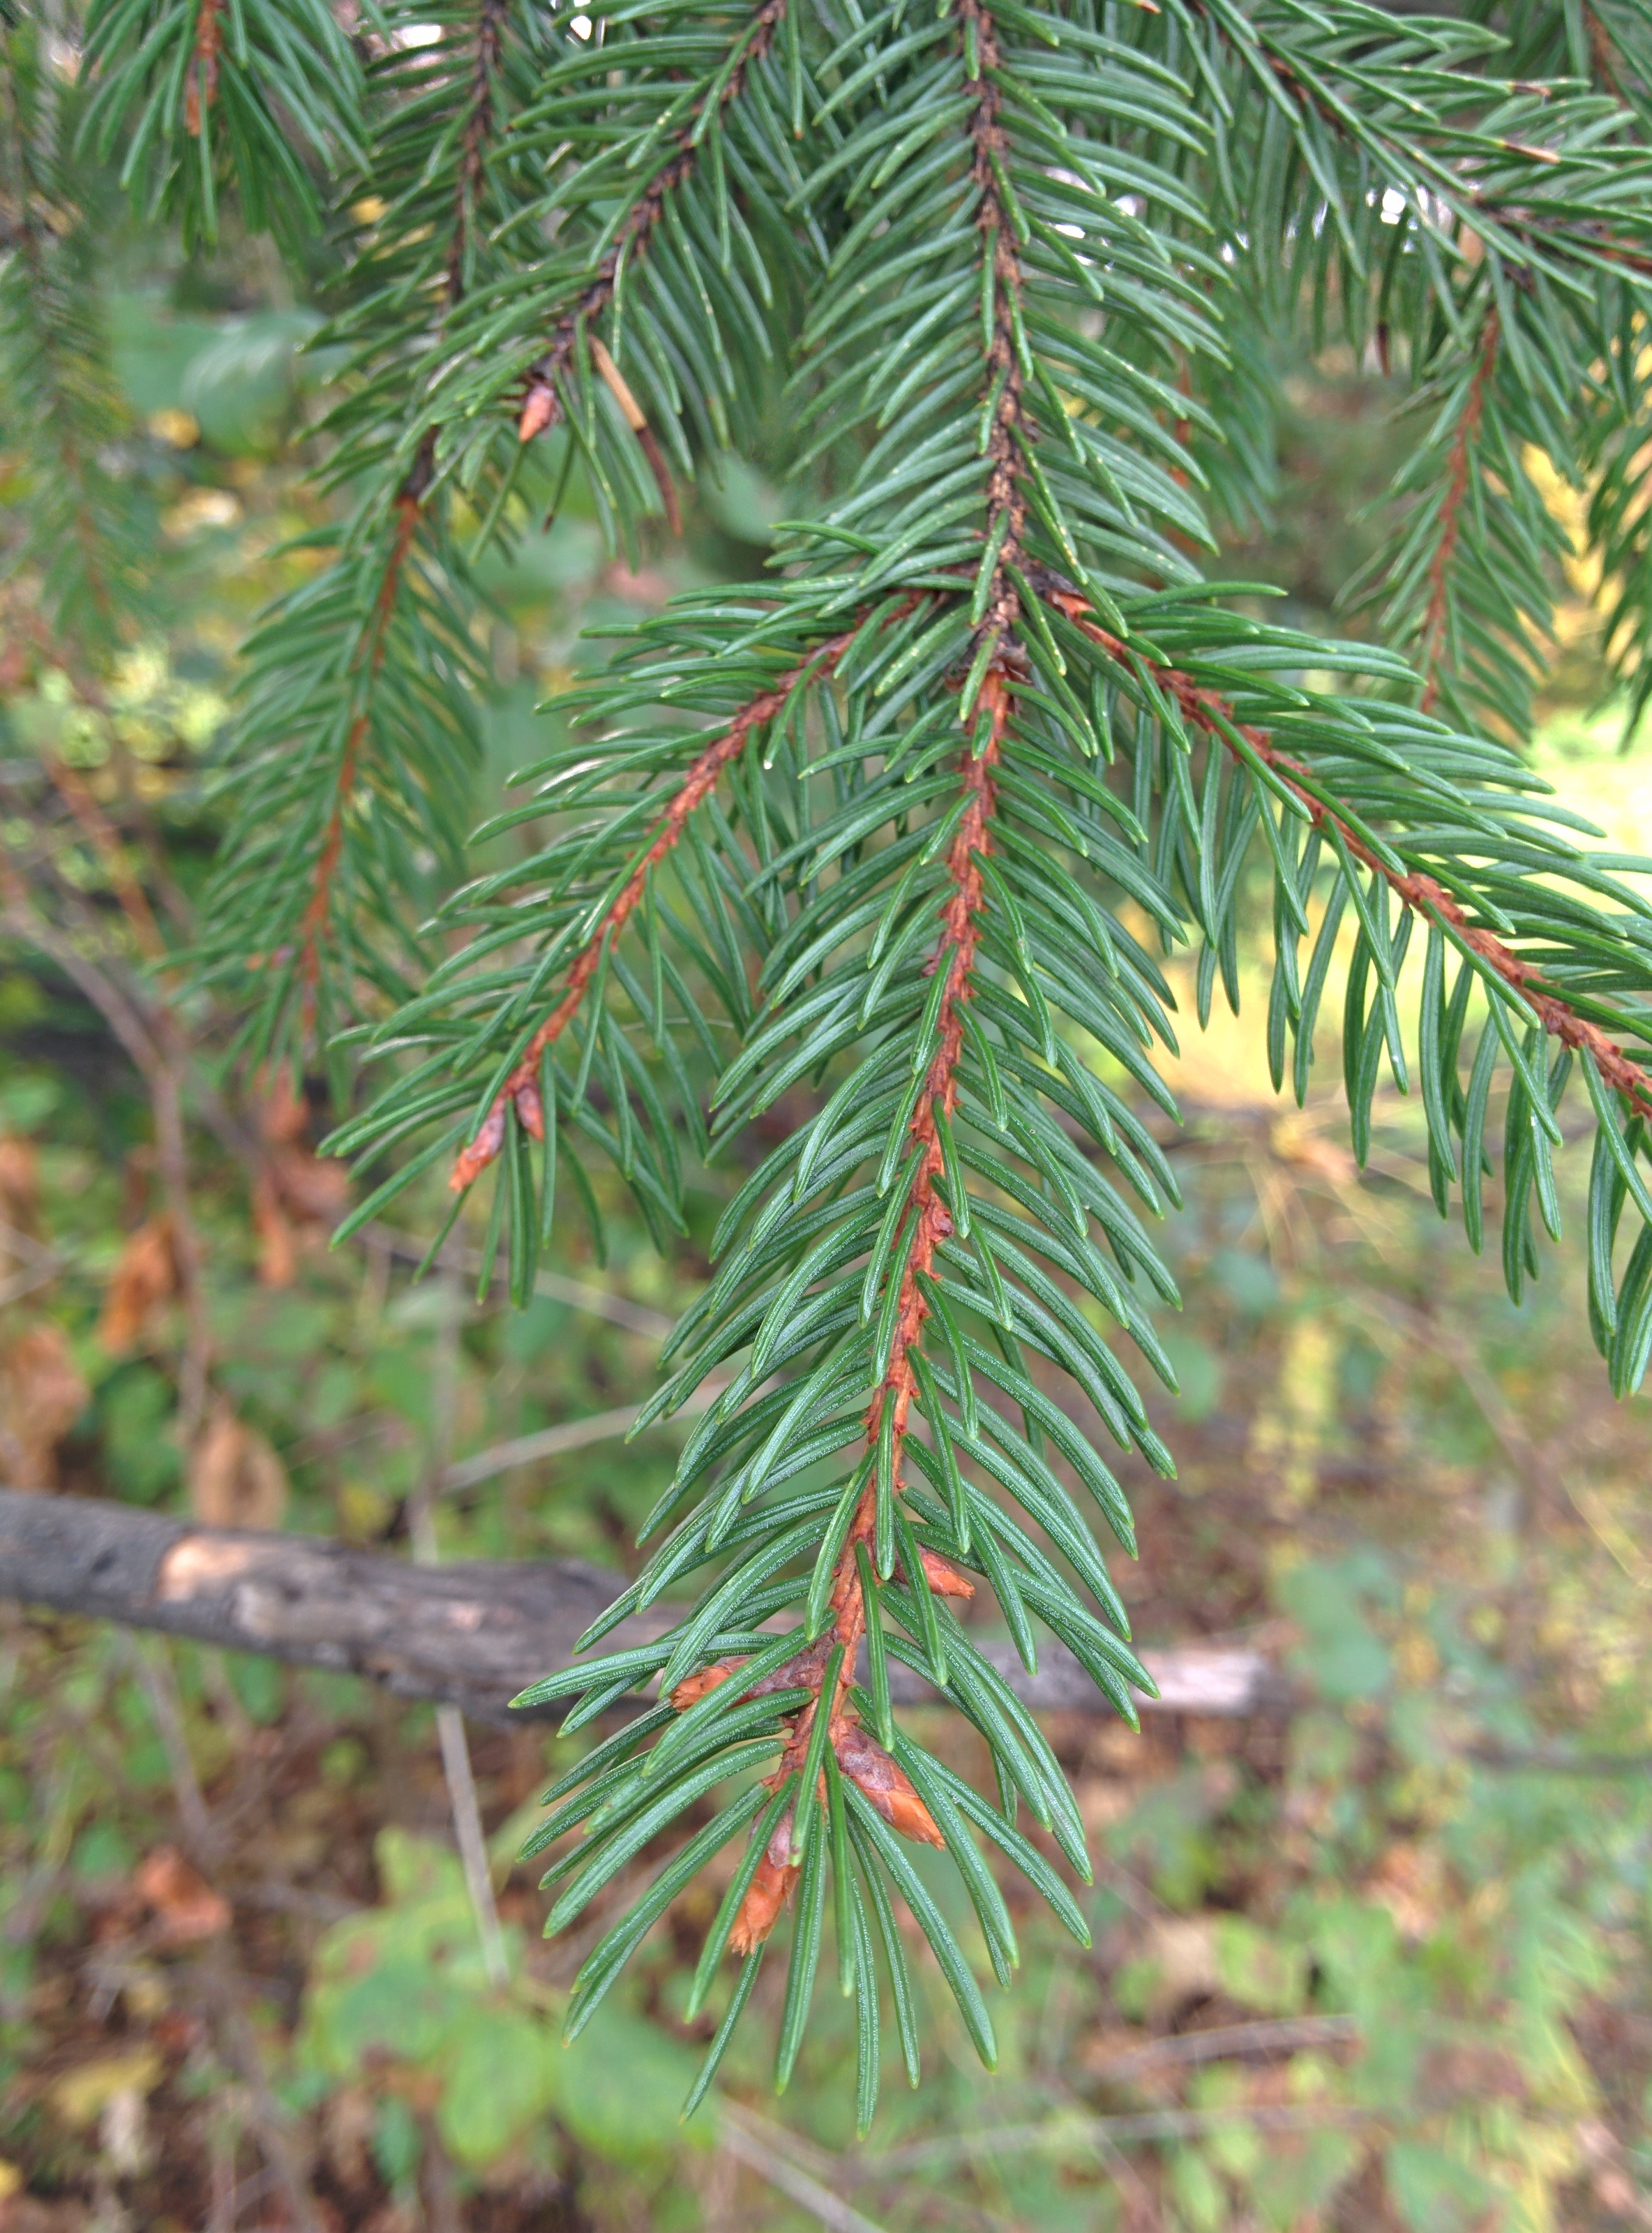 Norway spruce twig